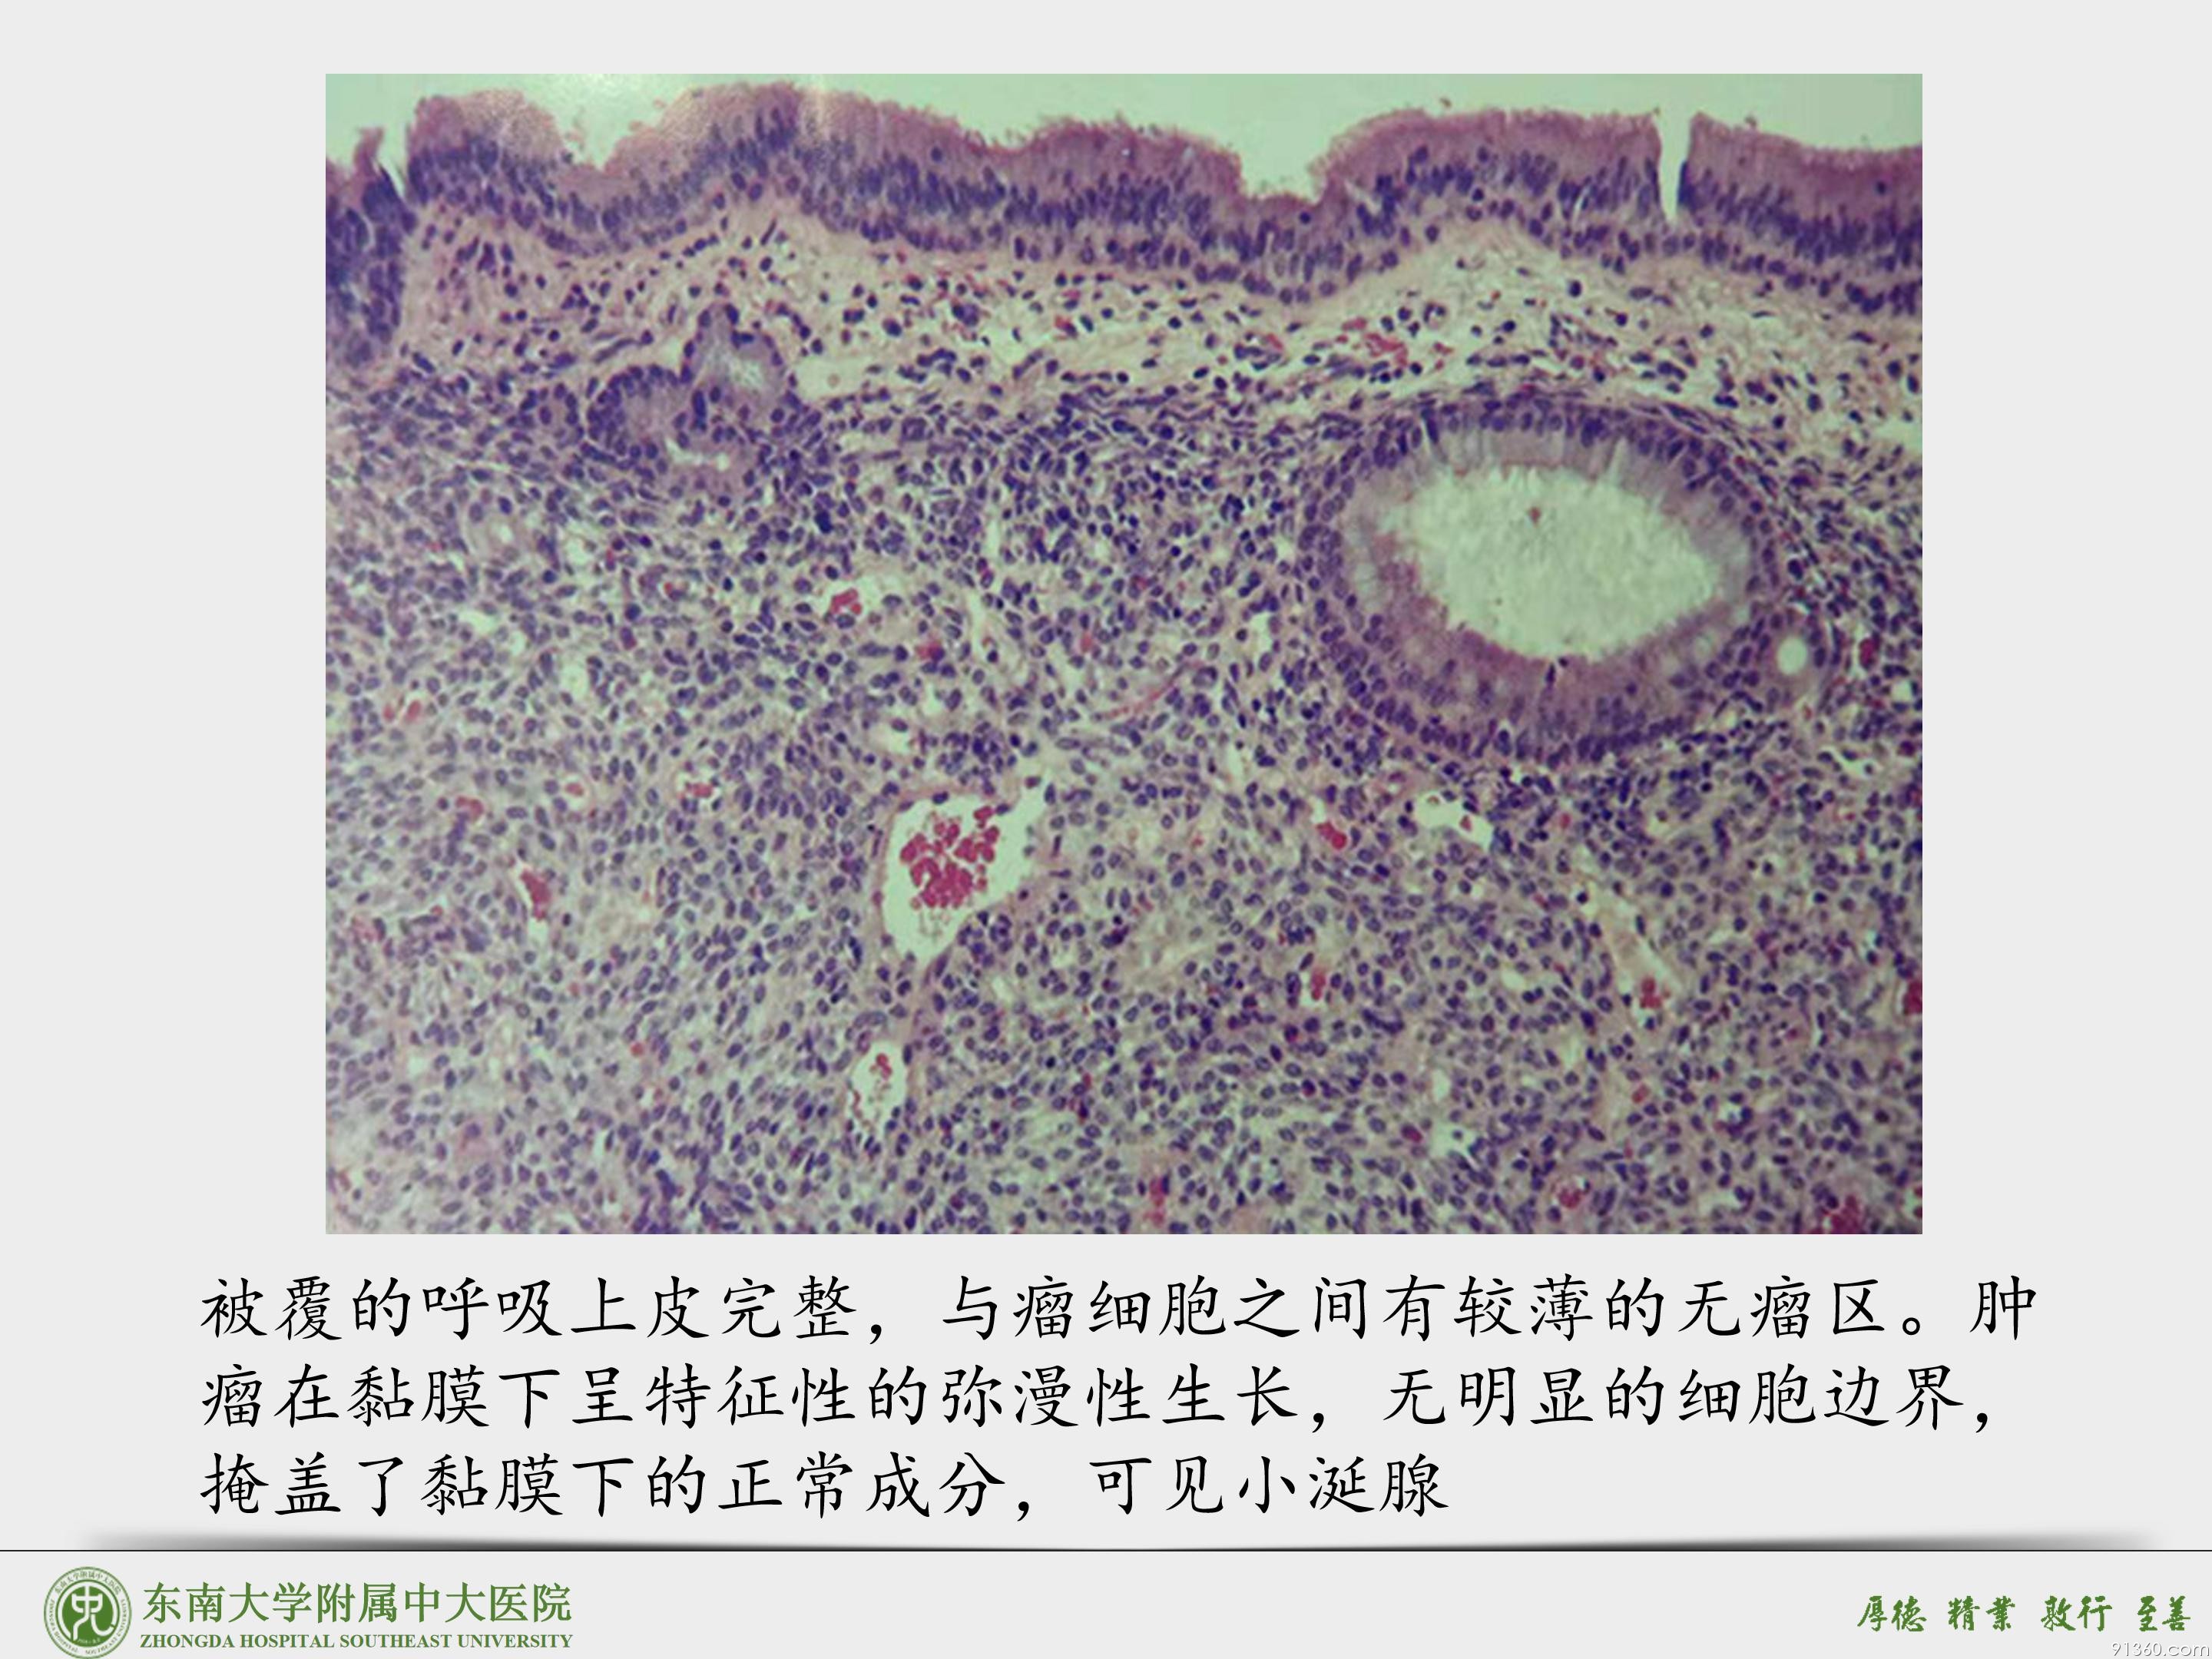 鼻腔鼻窦球血管外皮细胞瘤_39.jpg